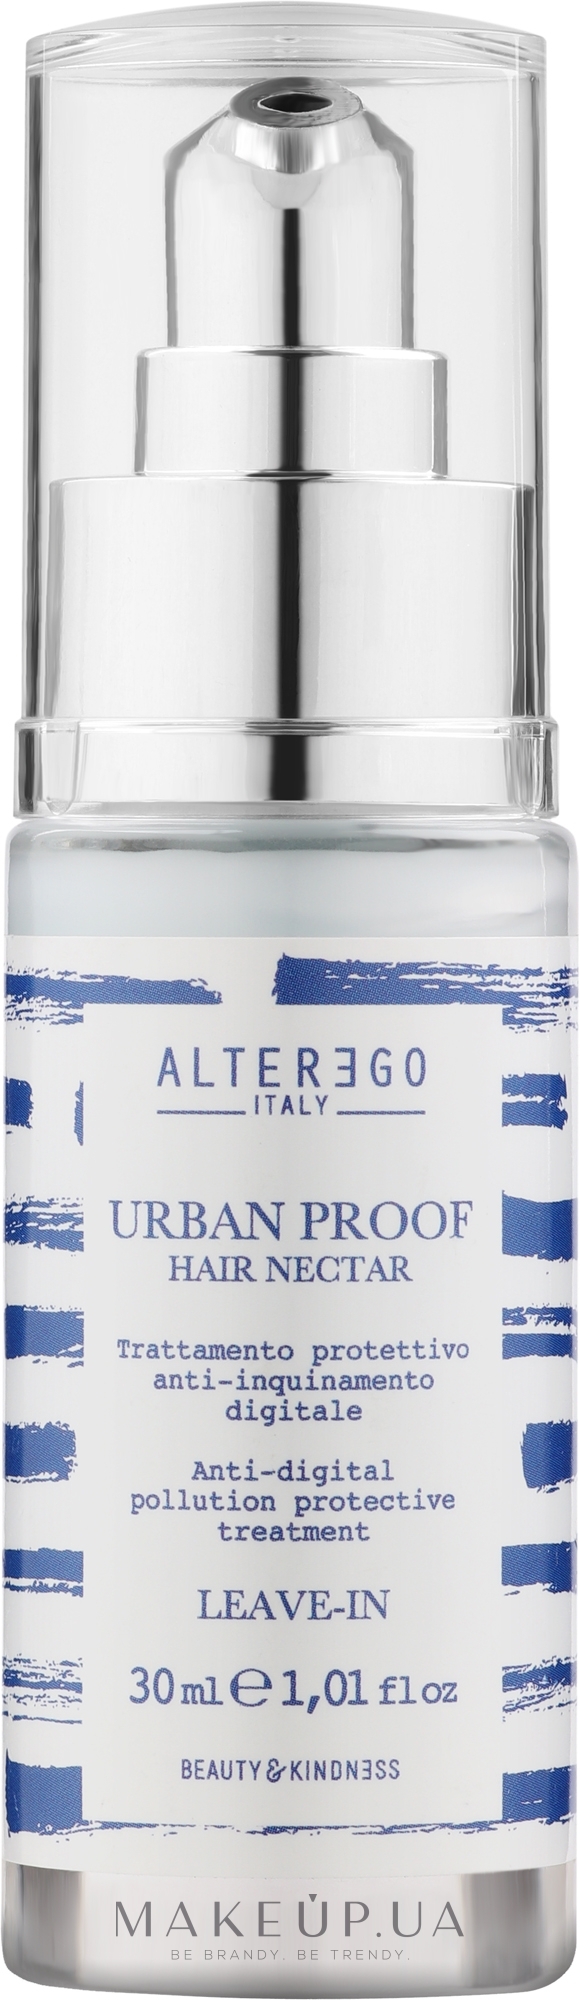 Защитный нектар для волос против излучения - Alter Ego Urban Proof Anti-digital Hair Nectar — фото 30ml